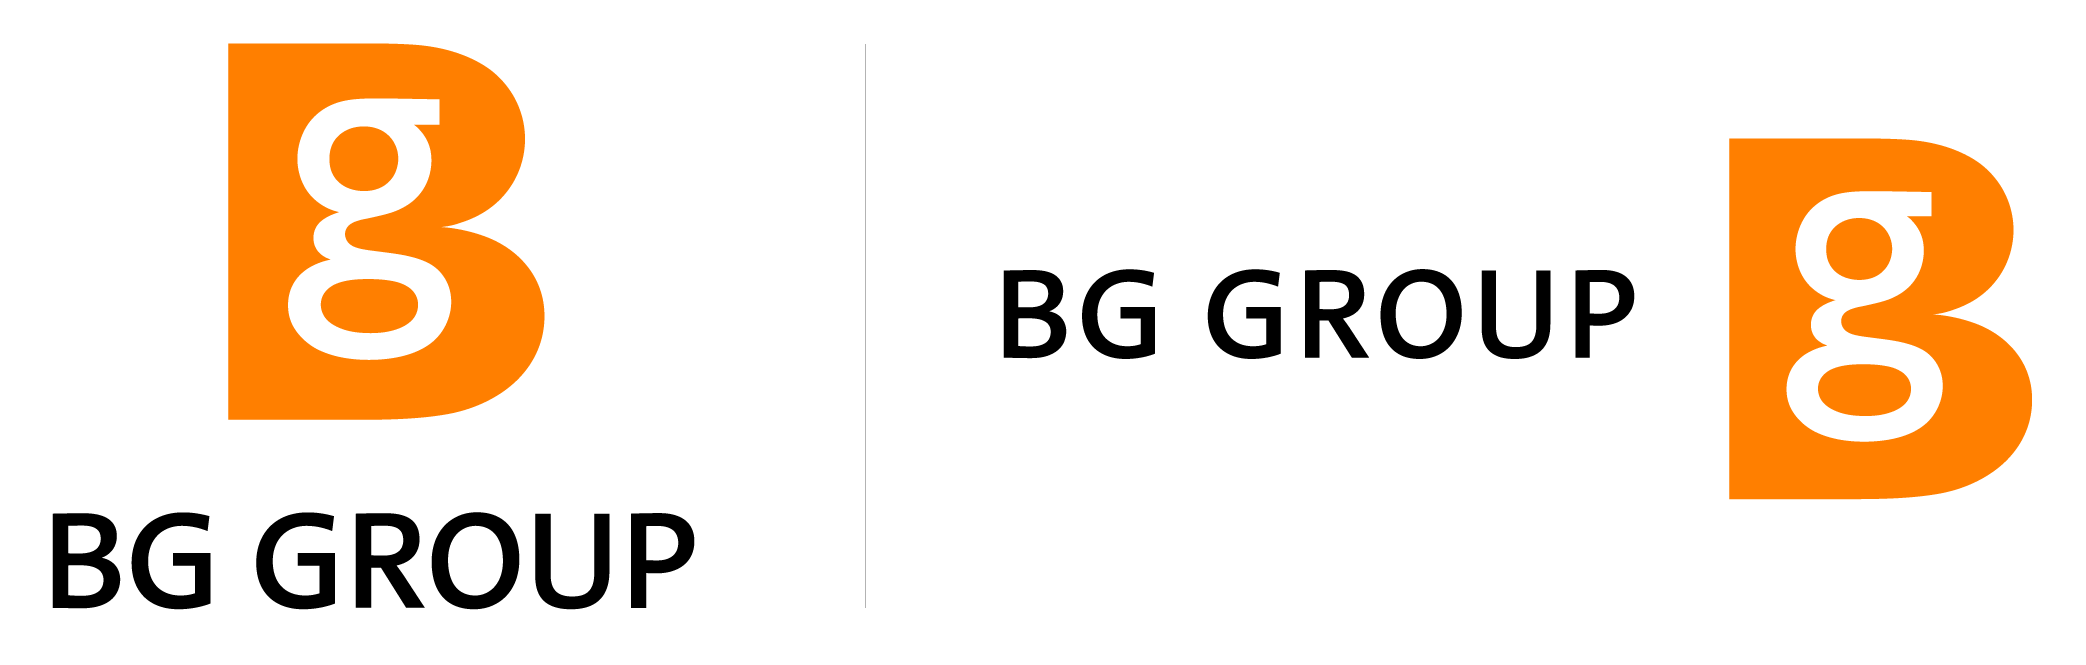 BG Group Logo - BG Group - Fonts In Use